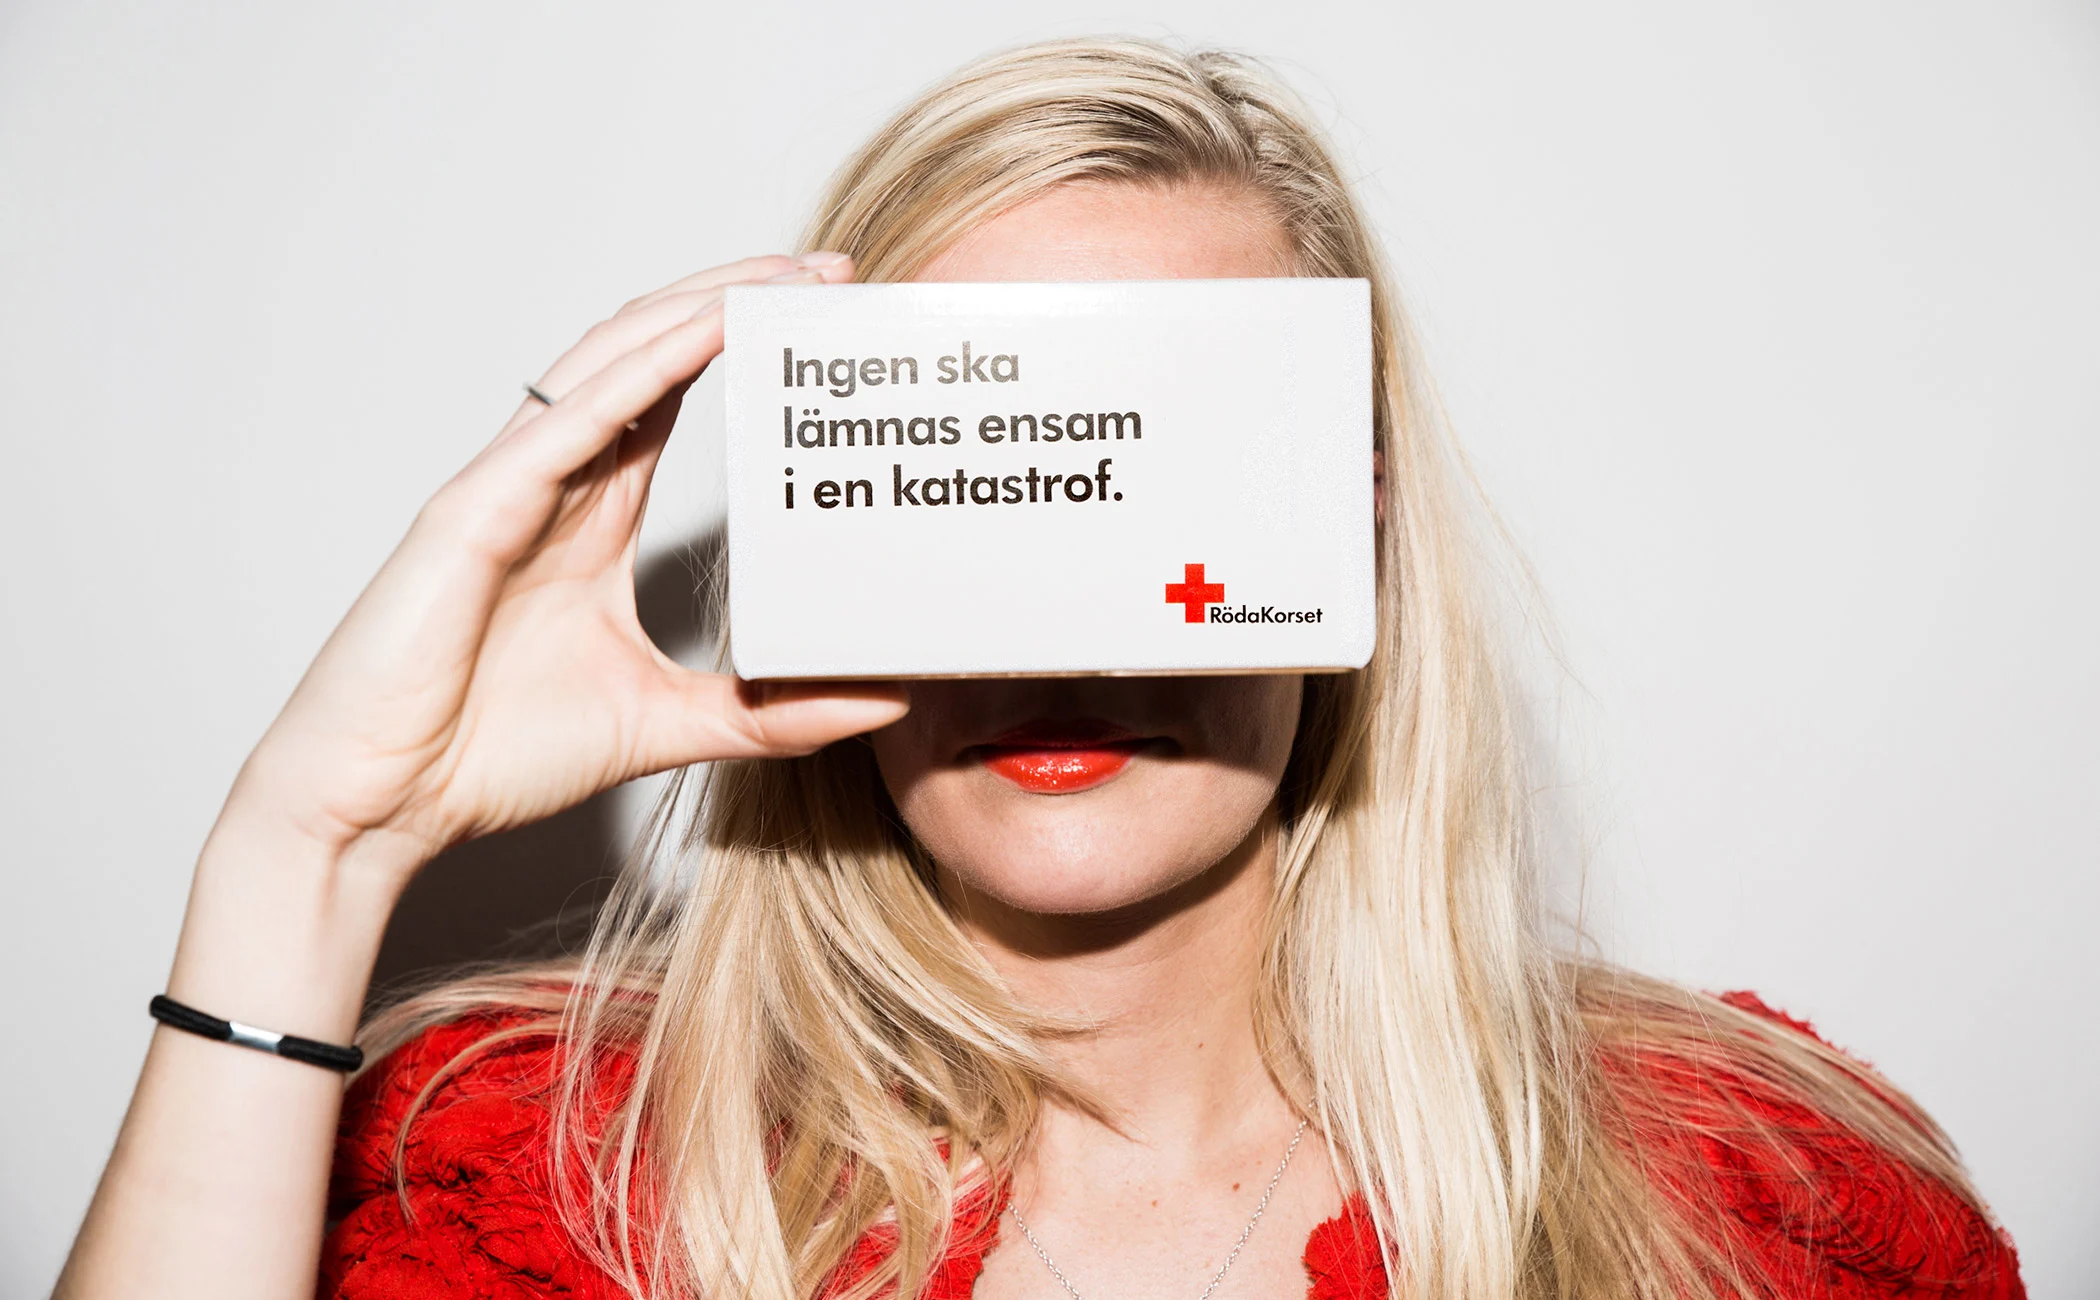 Swedish Red Cross VR Landscape Image